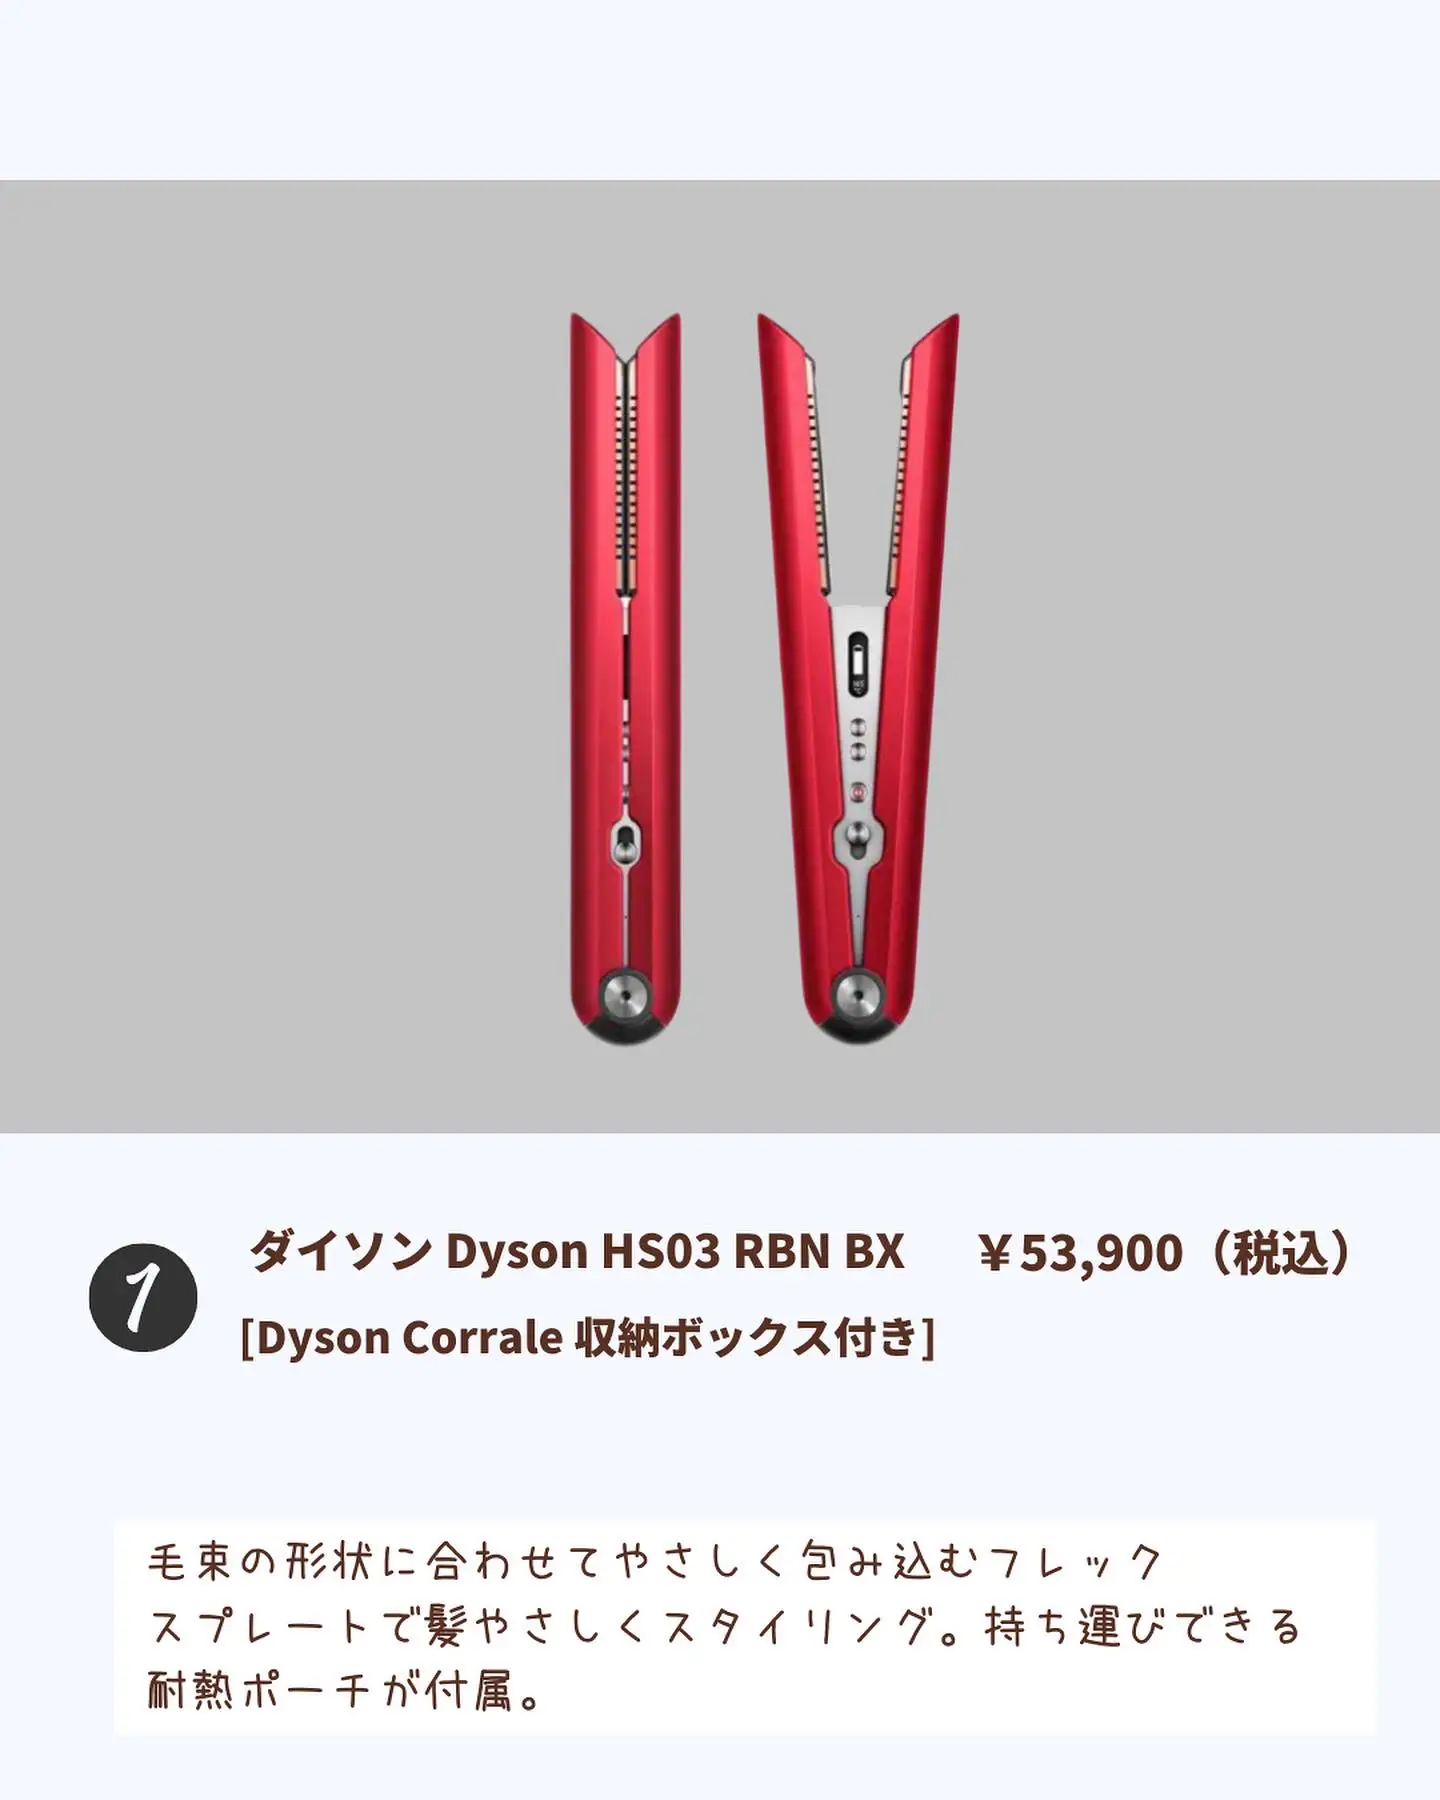 売れ筋】 Dyson HS03 RBN BX Corrale収納ボックス付き sushitai.com.mx